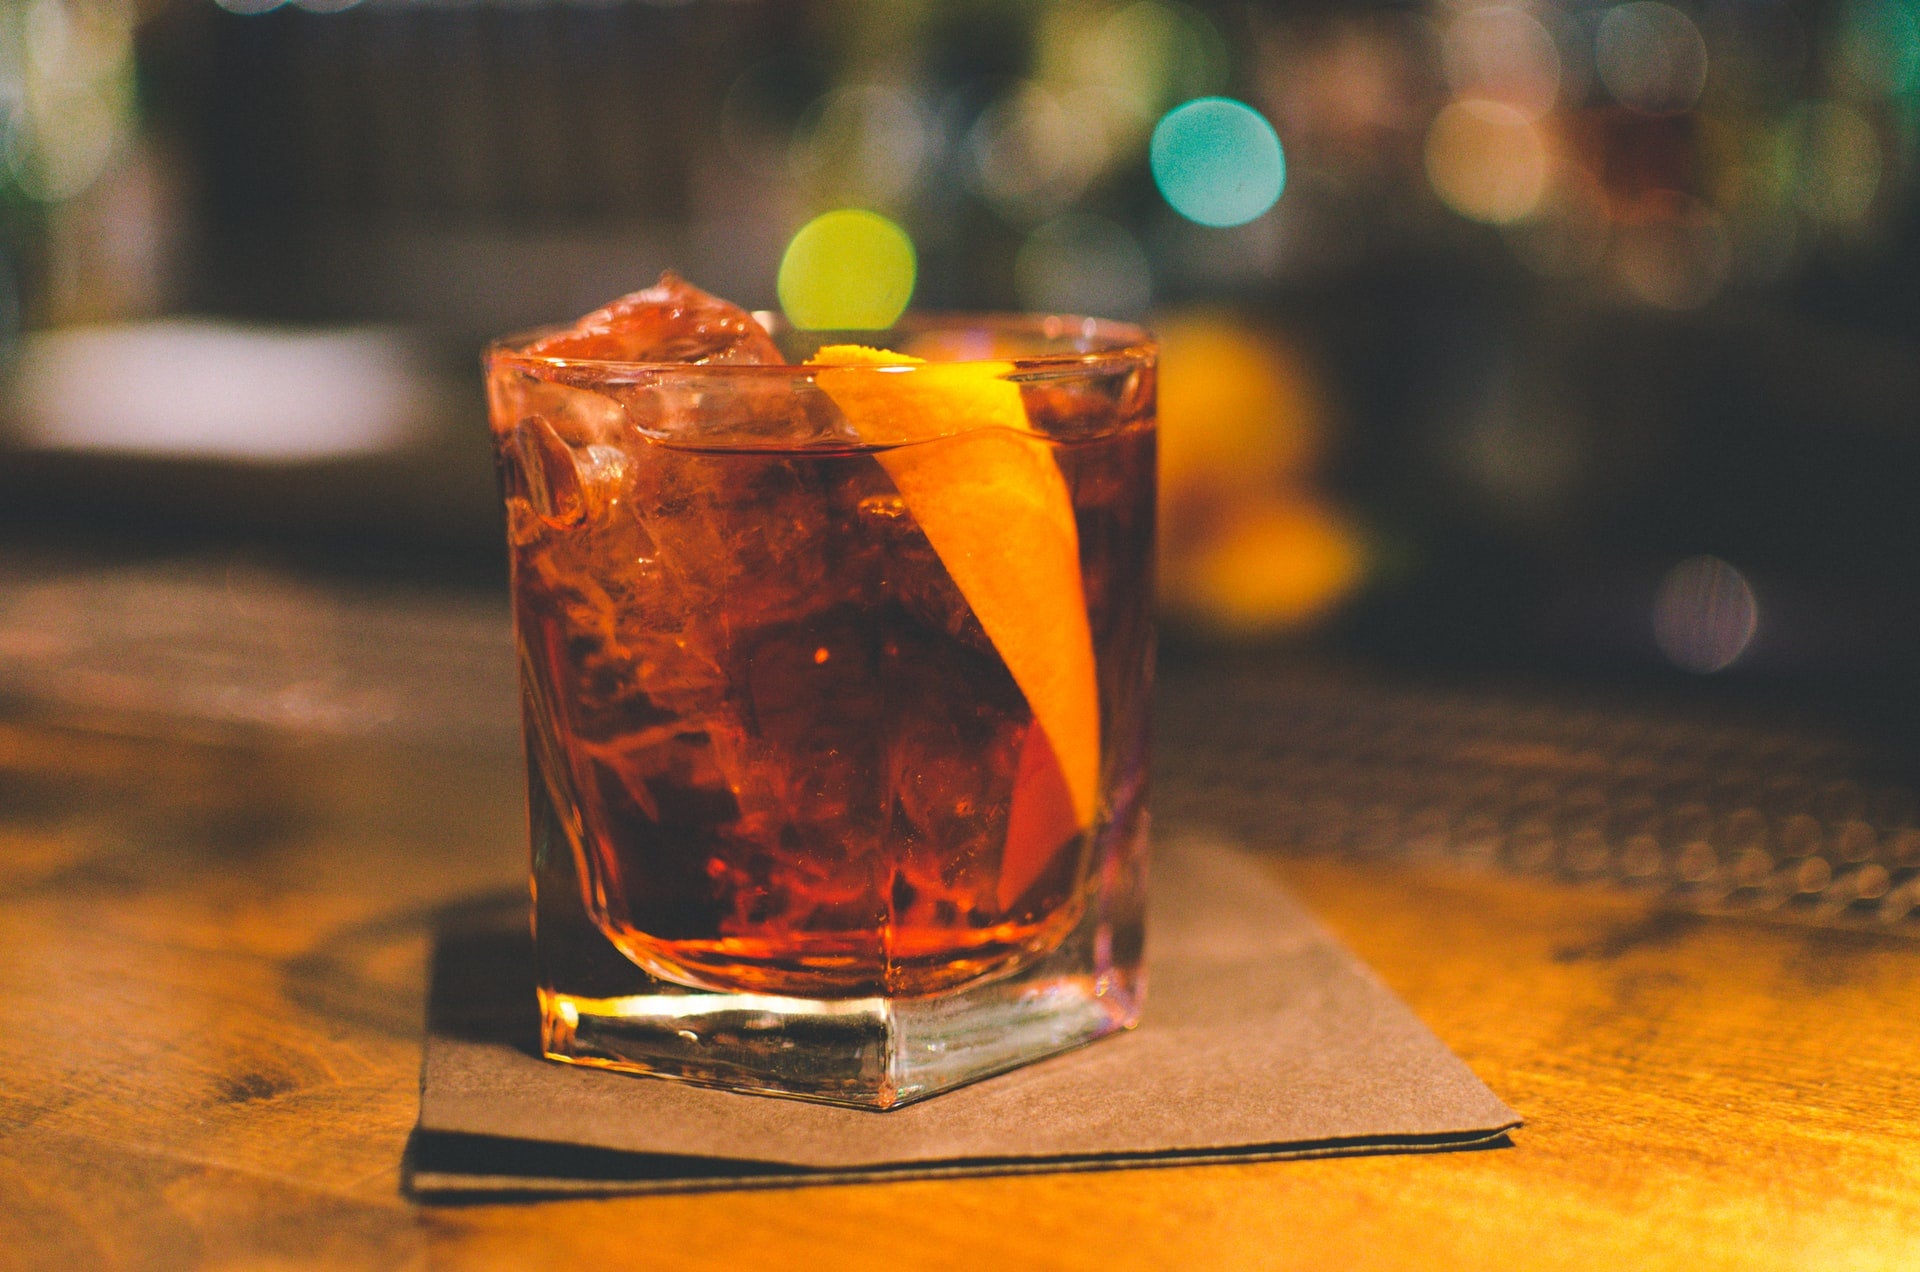 ALT: cocktail with orange garnish